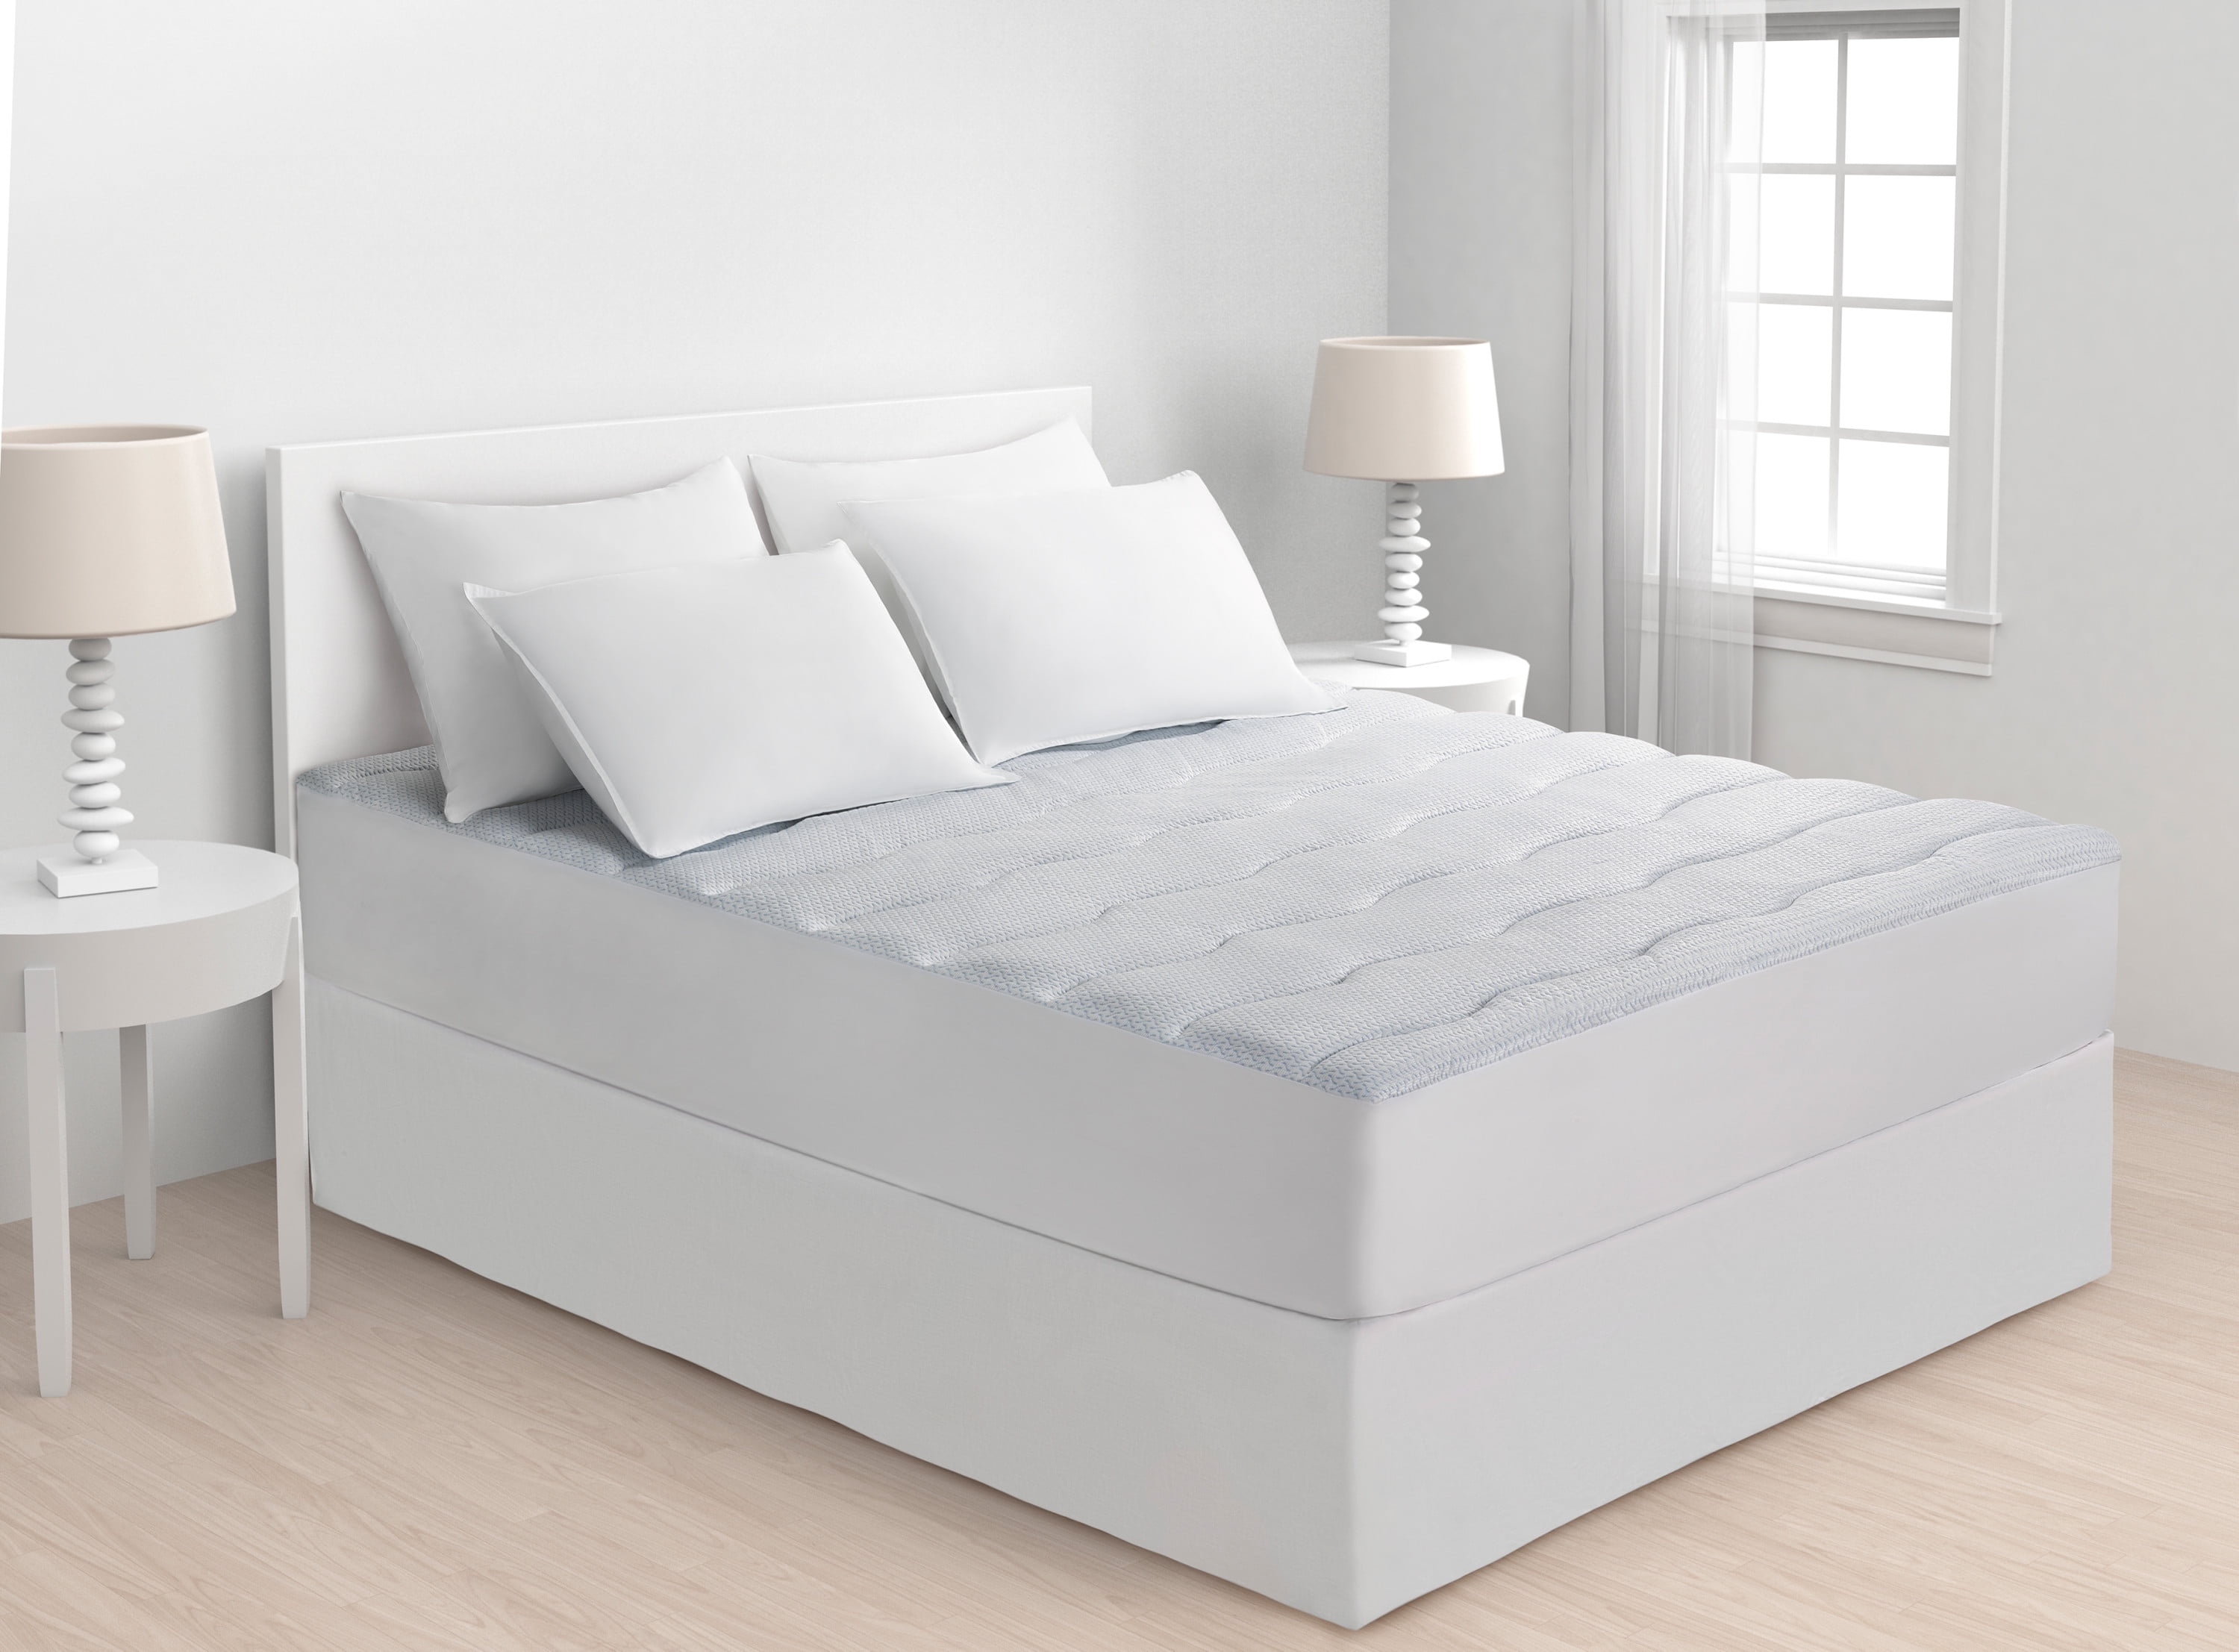 mattress pad full size shopko